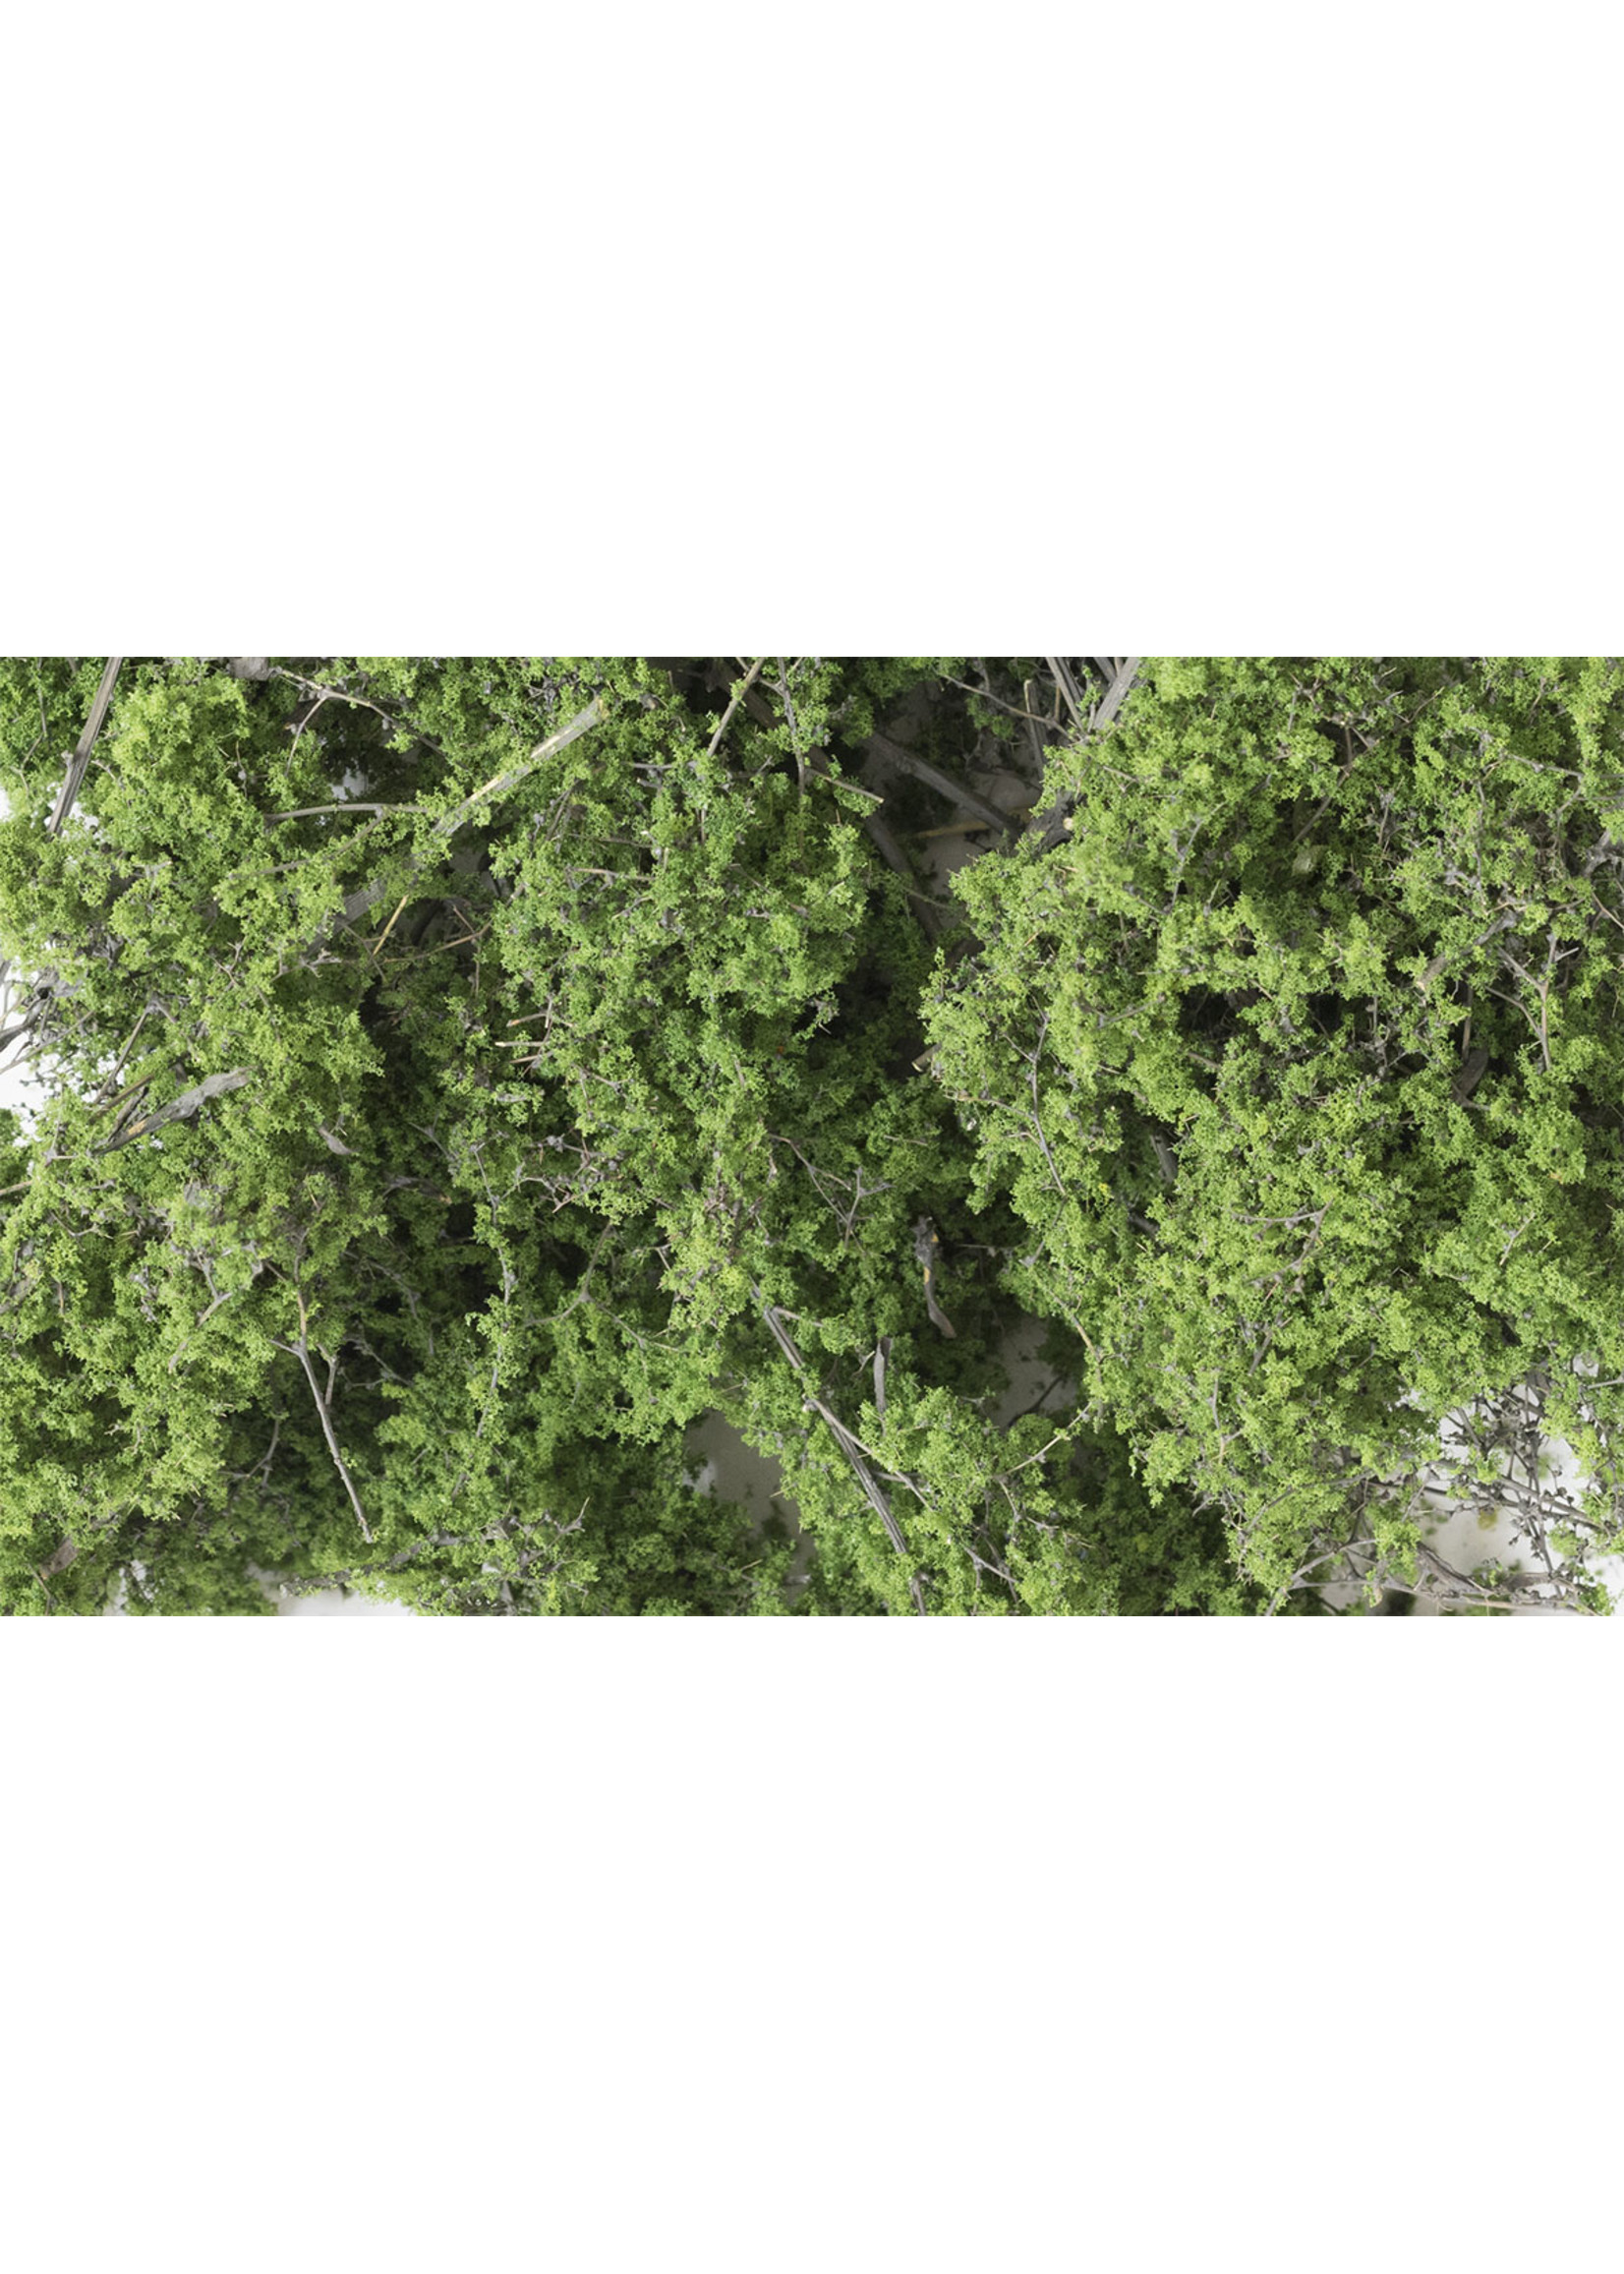 Woodland Scenics F1131 - Fine-Leaf Foliage, 75 cu. in. - Medium Green